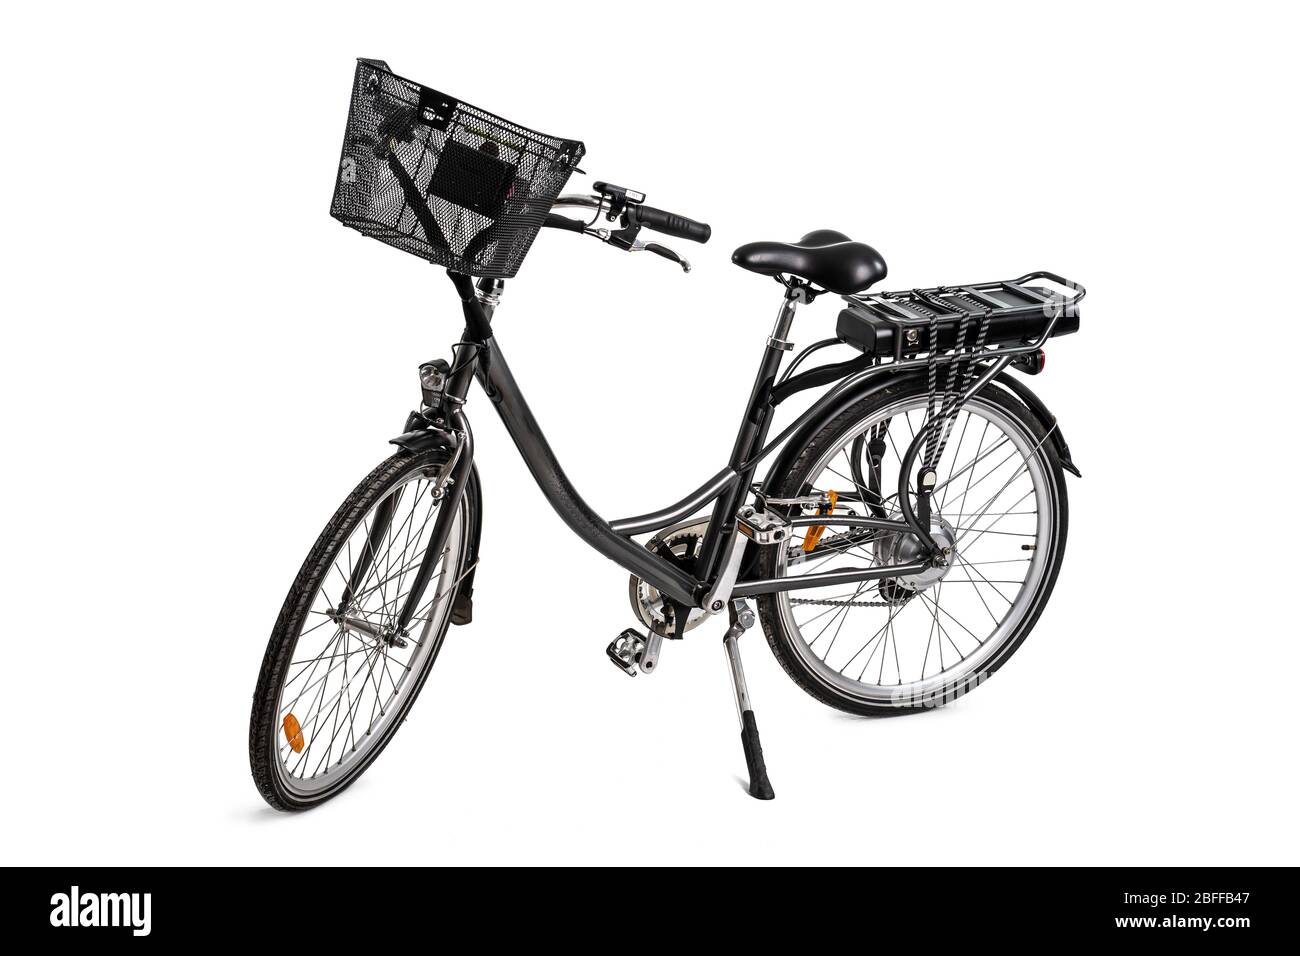 Fahrrad Blinker auf weißem Hintergrund Stockfotografie - Alamy